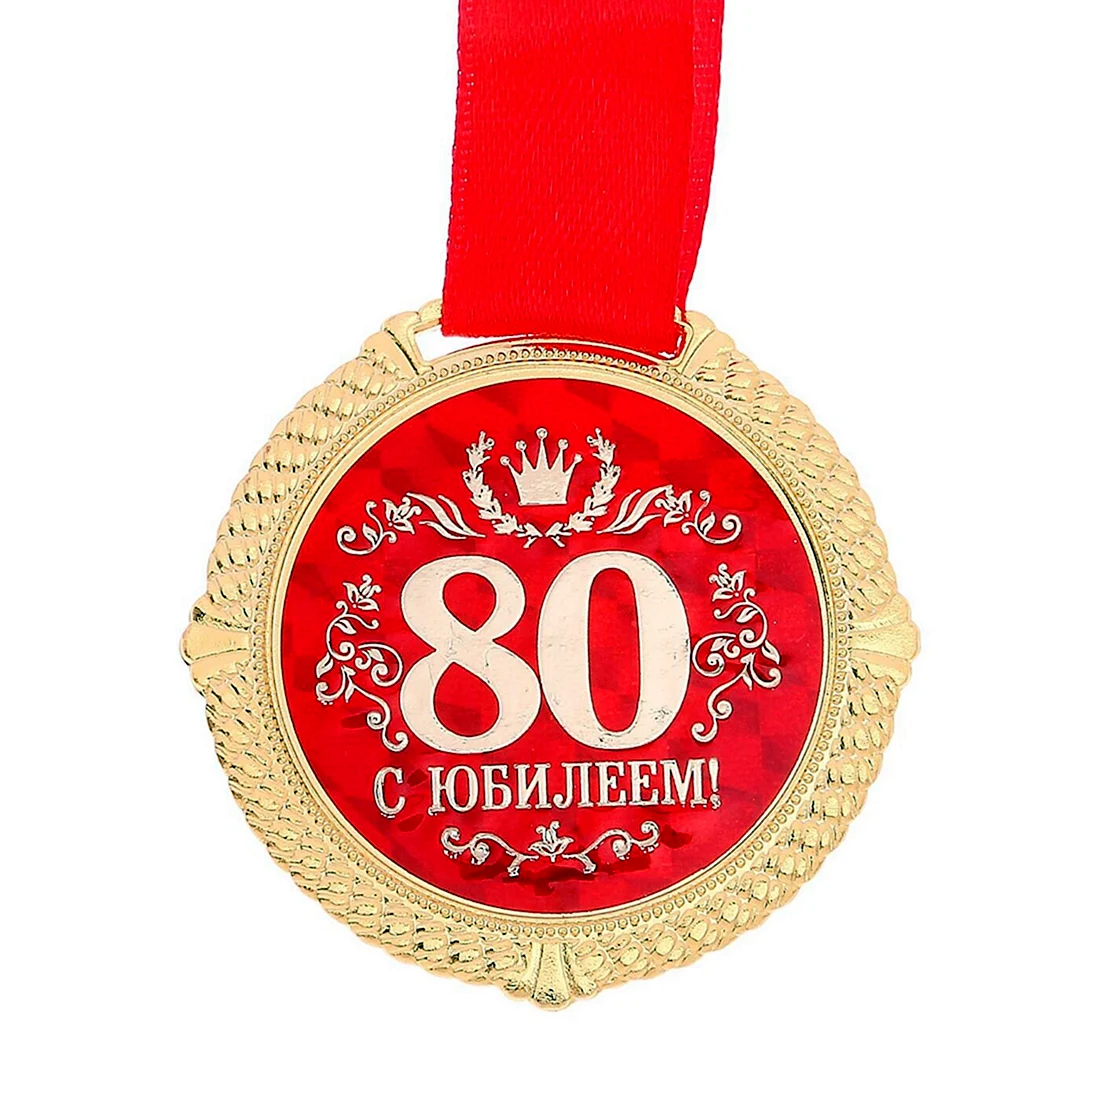 Медаль с юбилеем 90 лет